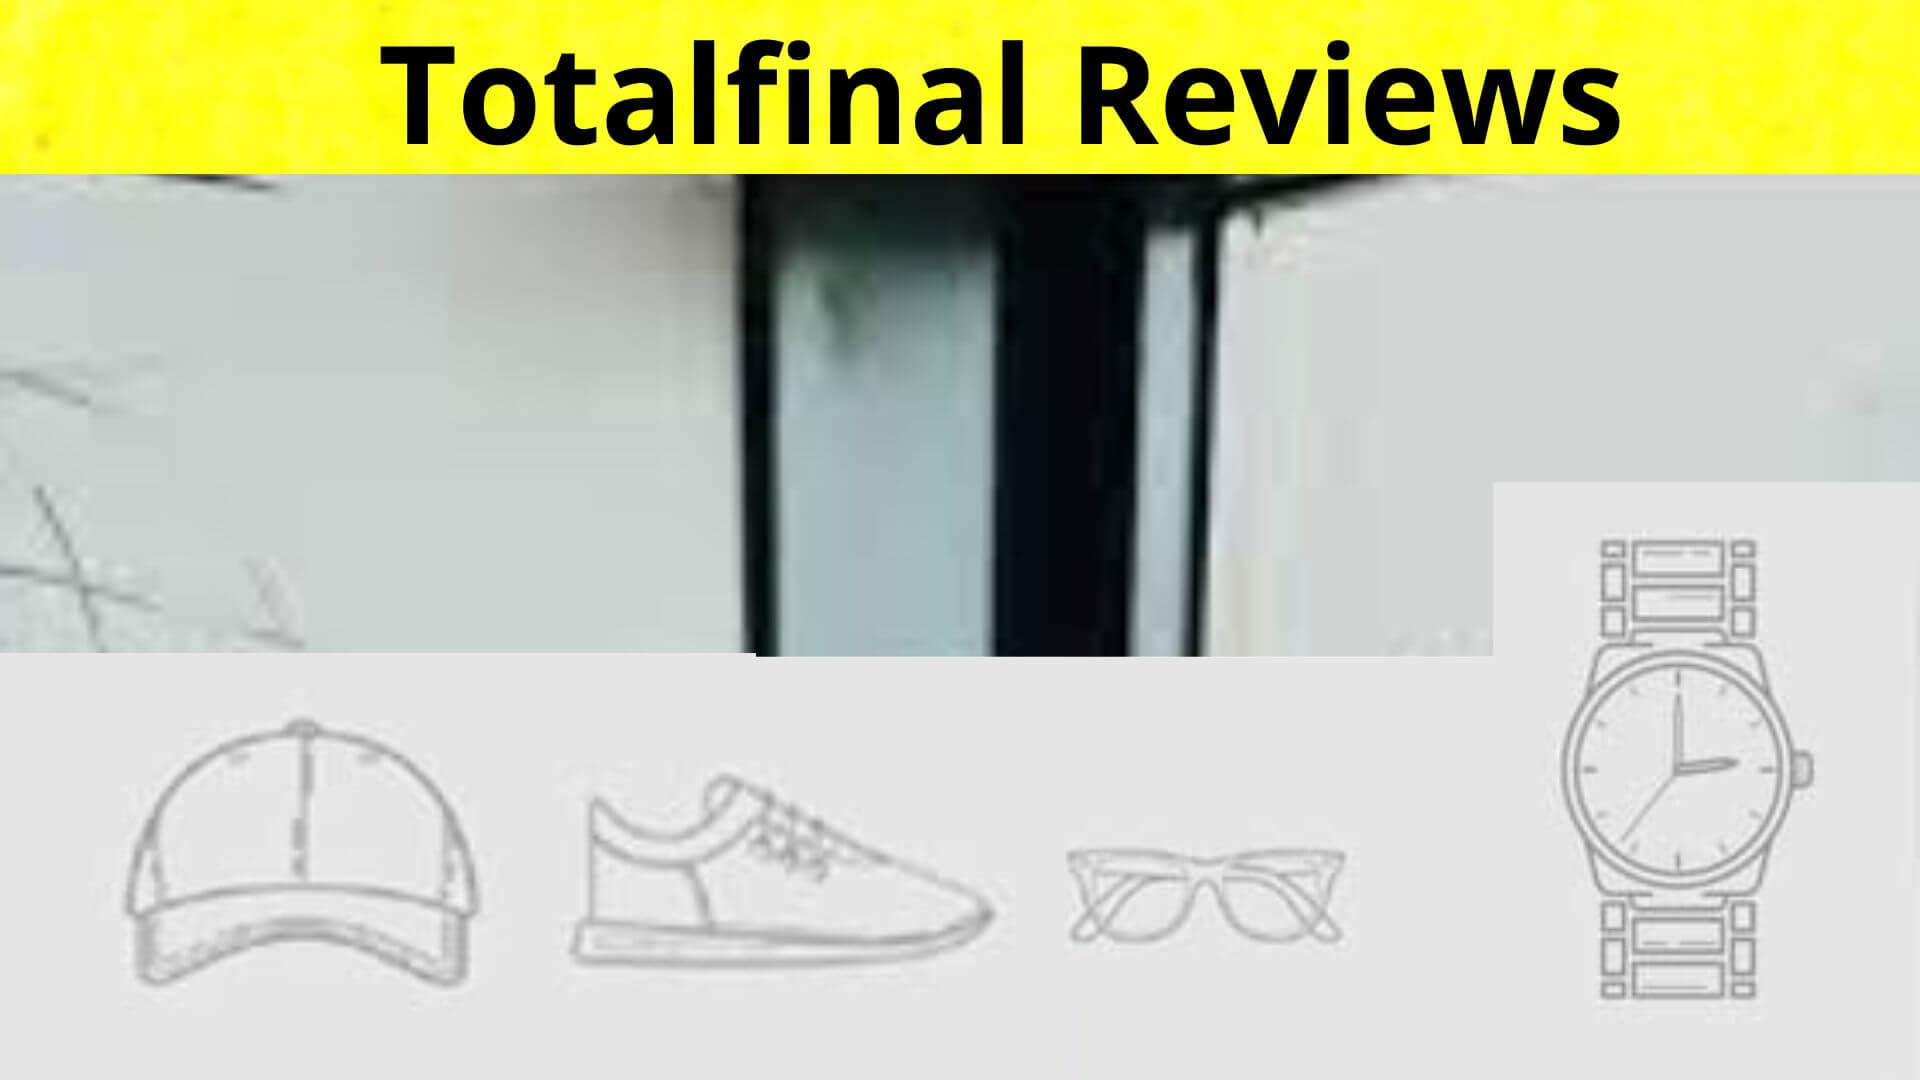 Totalfinal Reviews